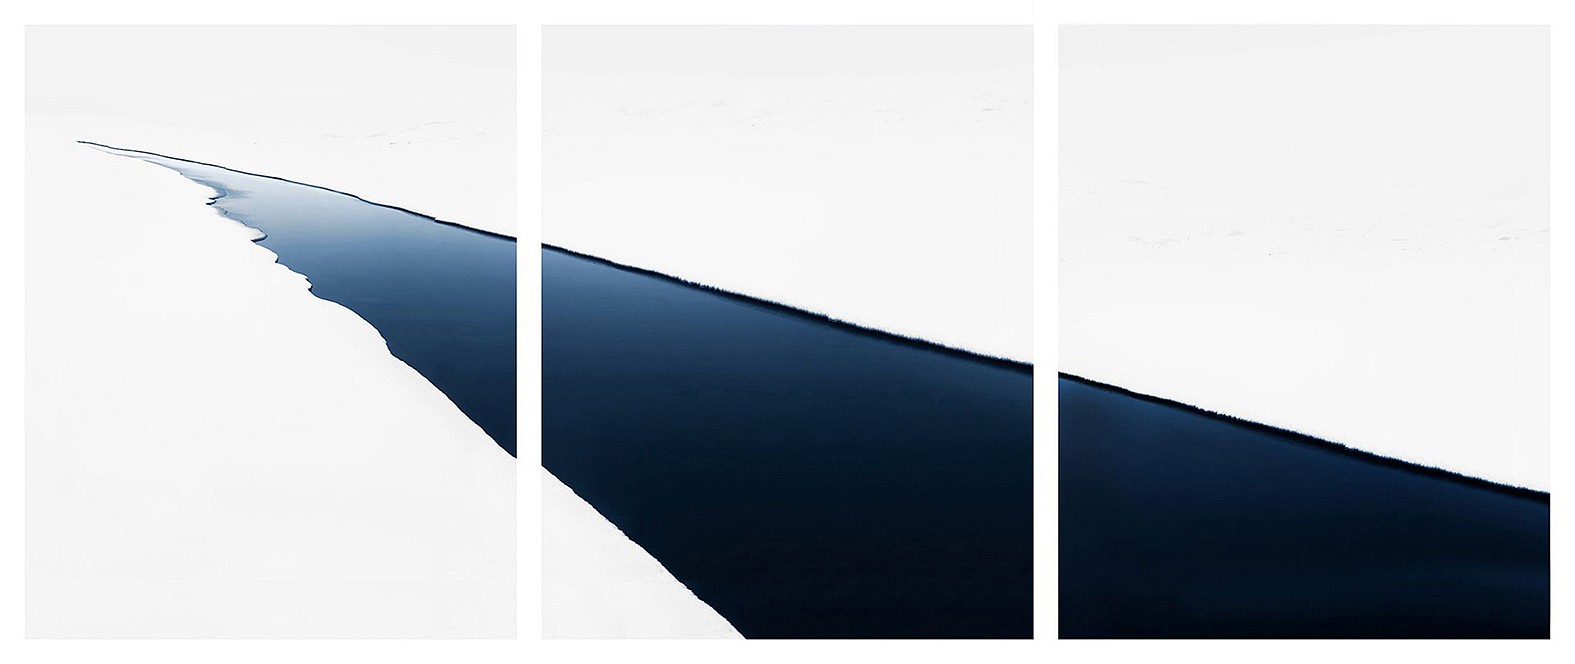 Jonathan Smith, Stream #43 (triptych)
Chromogenic print, 30x72", 40x97", 50x120", 70x168"